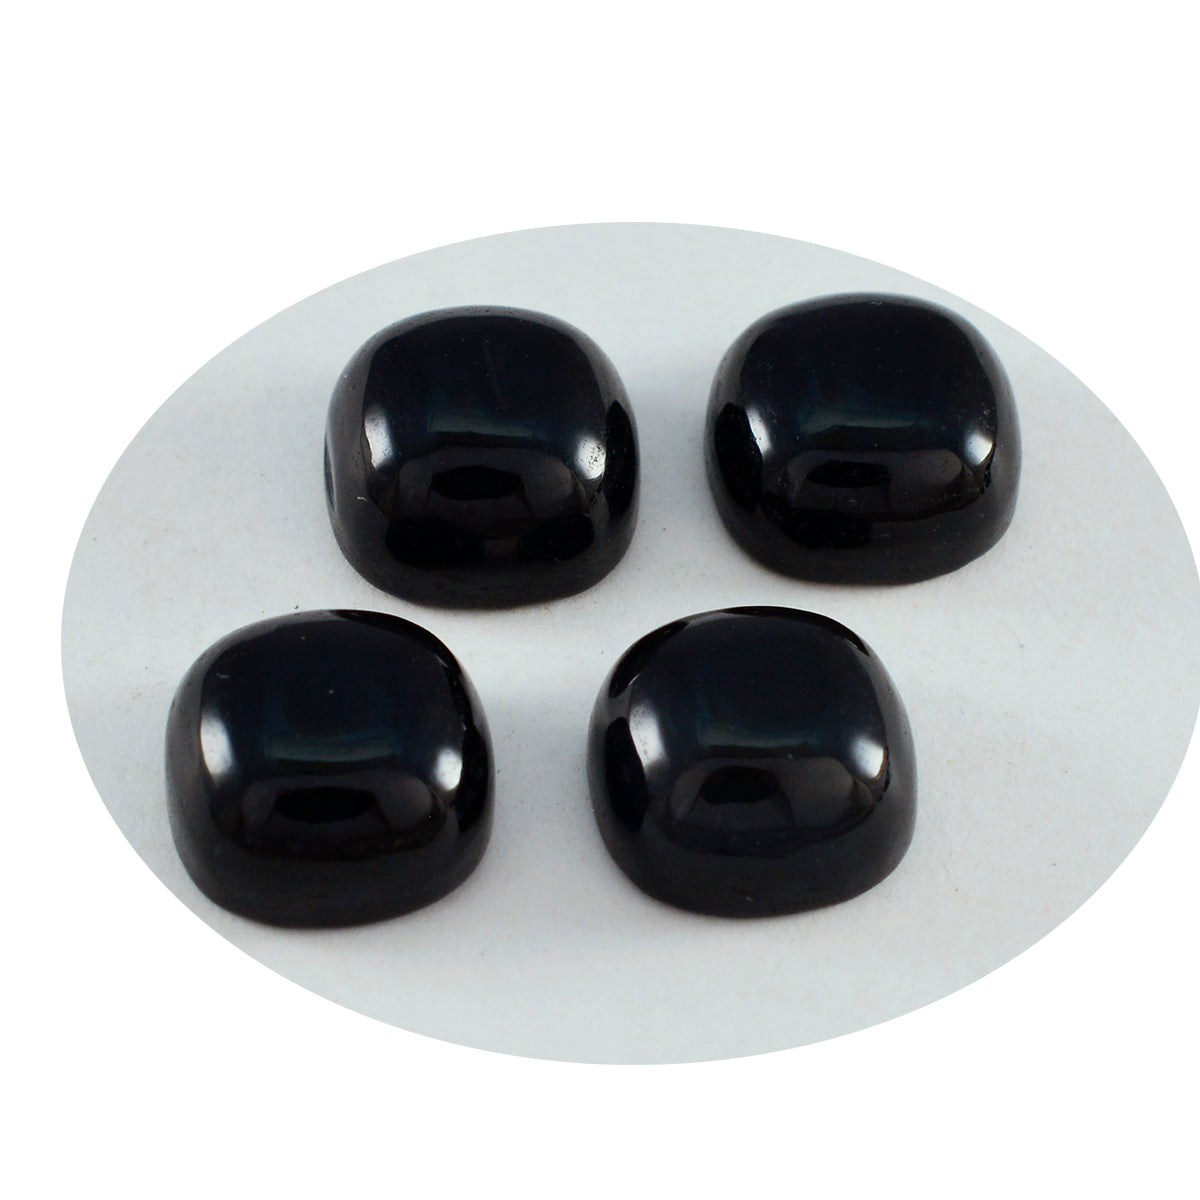 Riyogems 1 Stück schwarzer Onyx-Cabochon, 7 x 7 mm, Kissenform, schöne Qualität, loser Edelstein